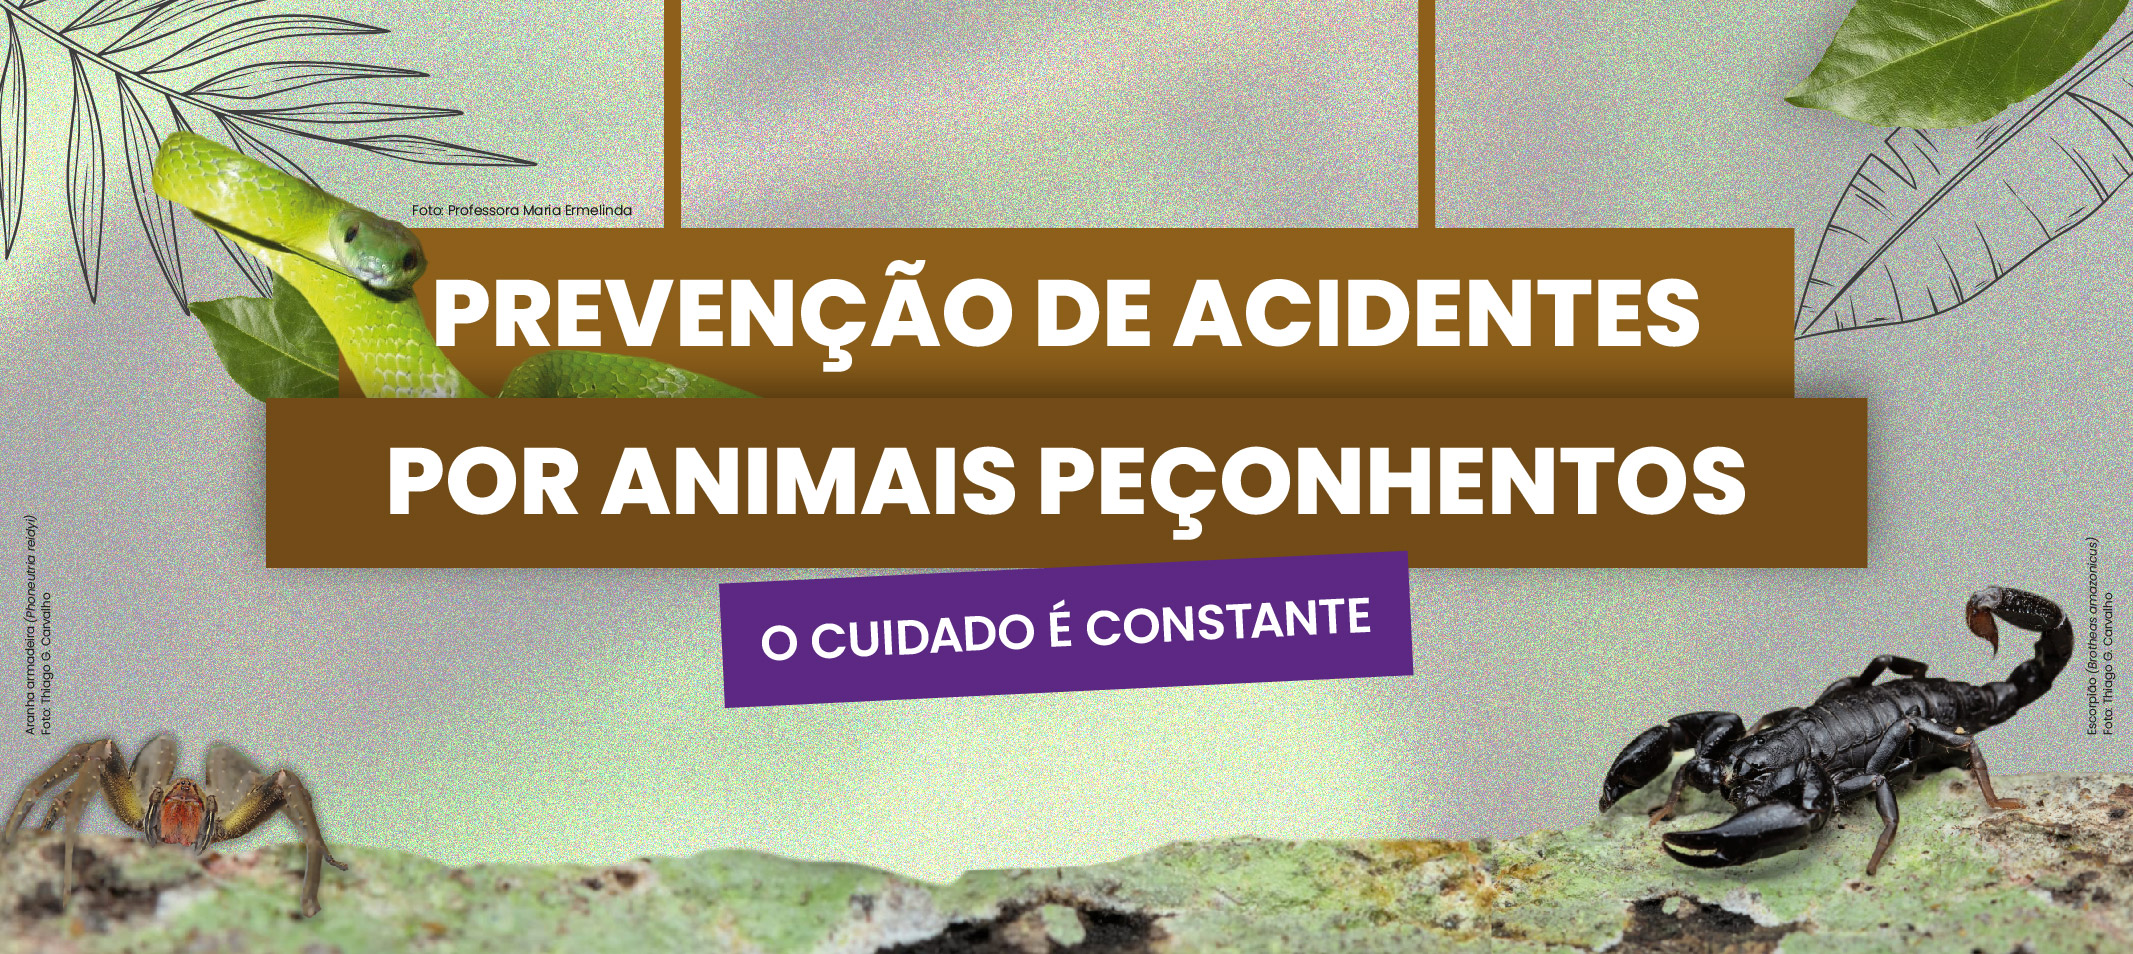 Ufam promove campanha de prevenção de acidentes ocasionados por animais peçonhentos